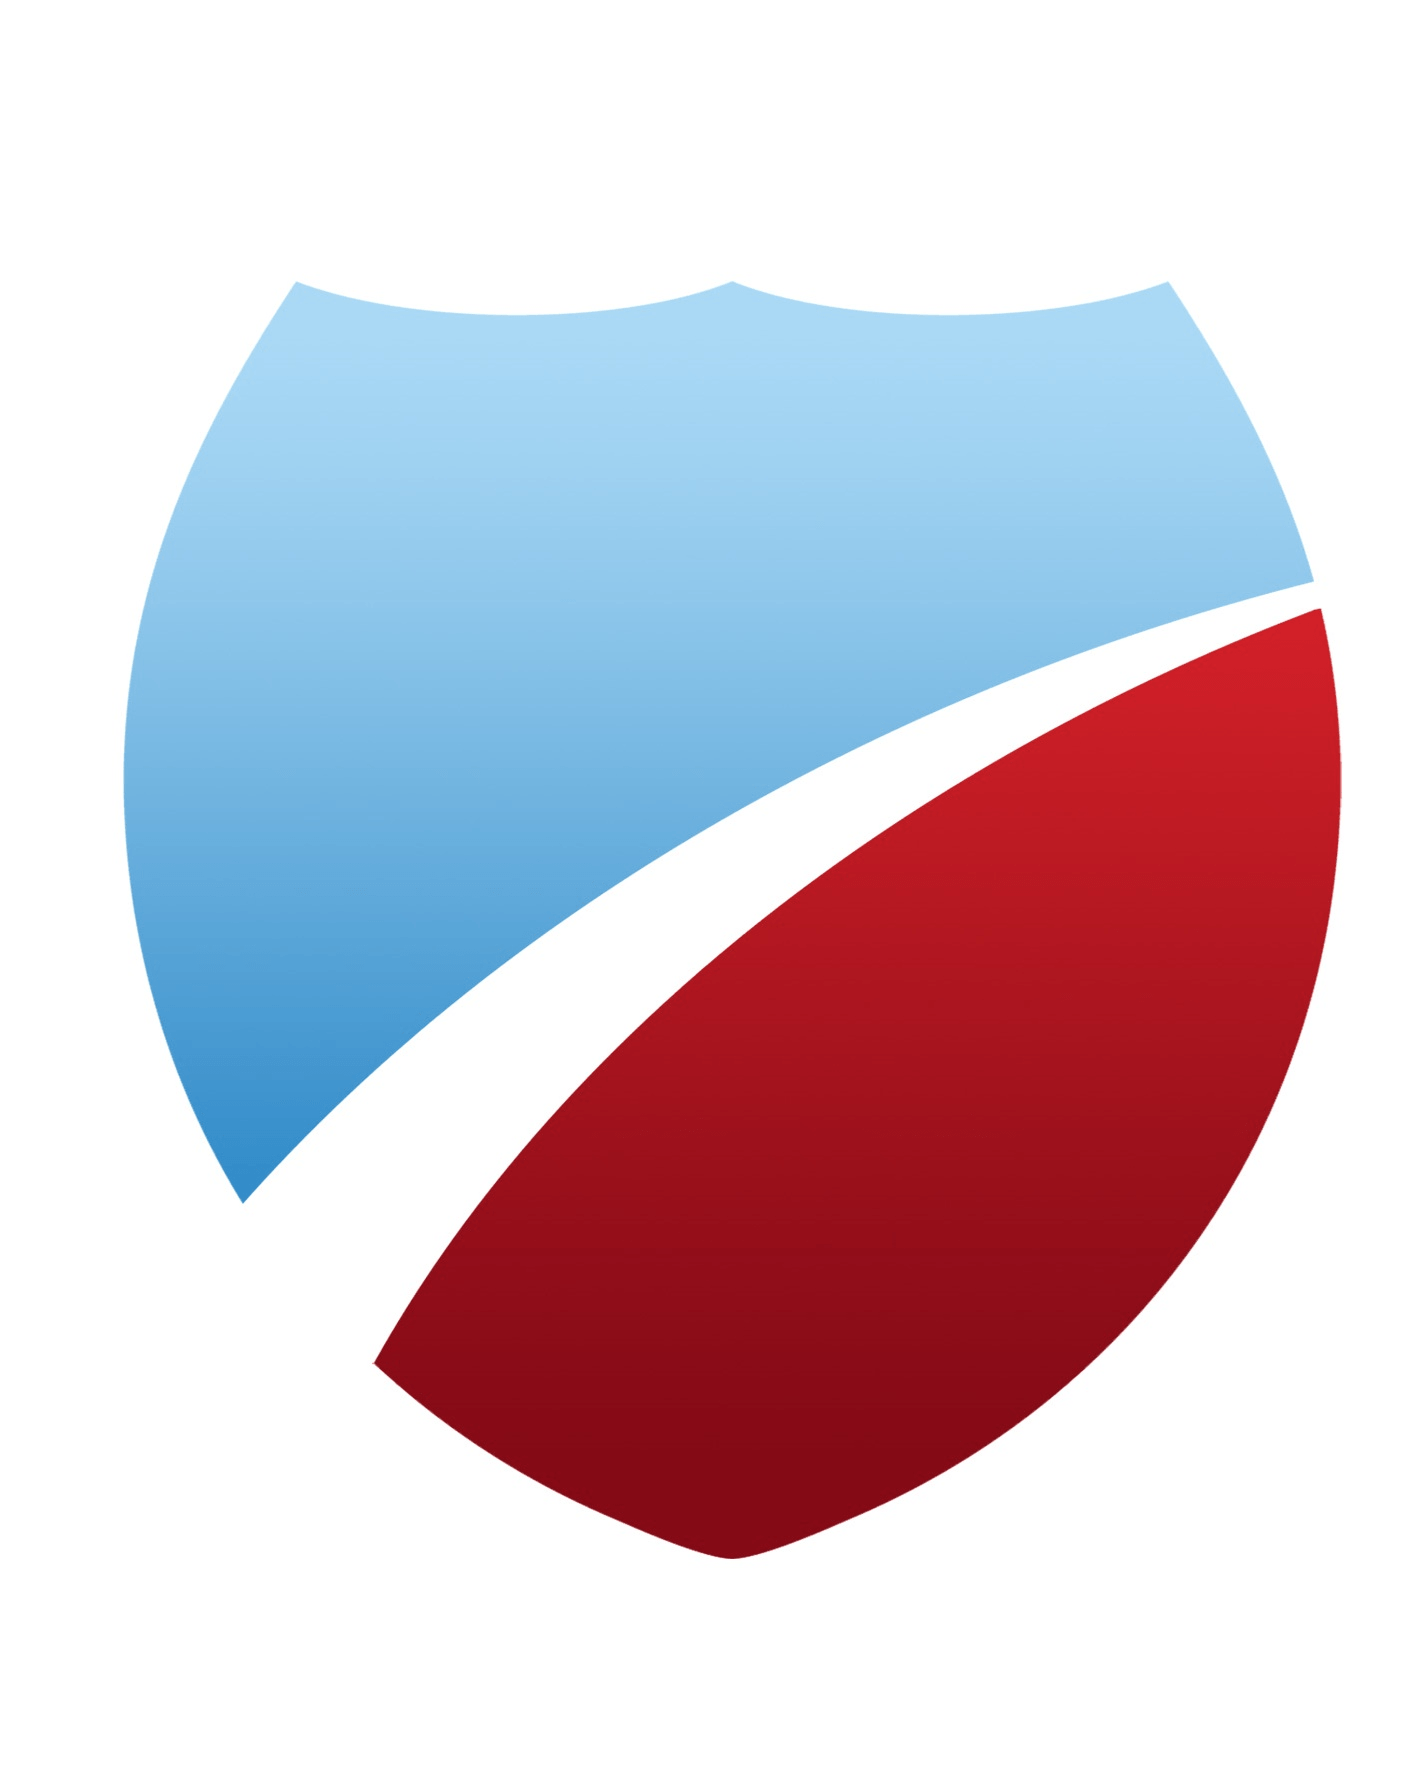 Red Shield Car Company Logo - Coverage - American Auto Shield